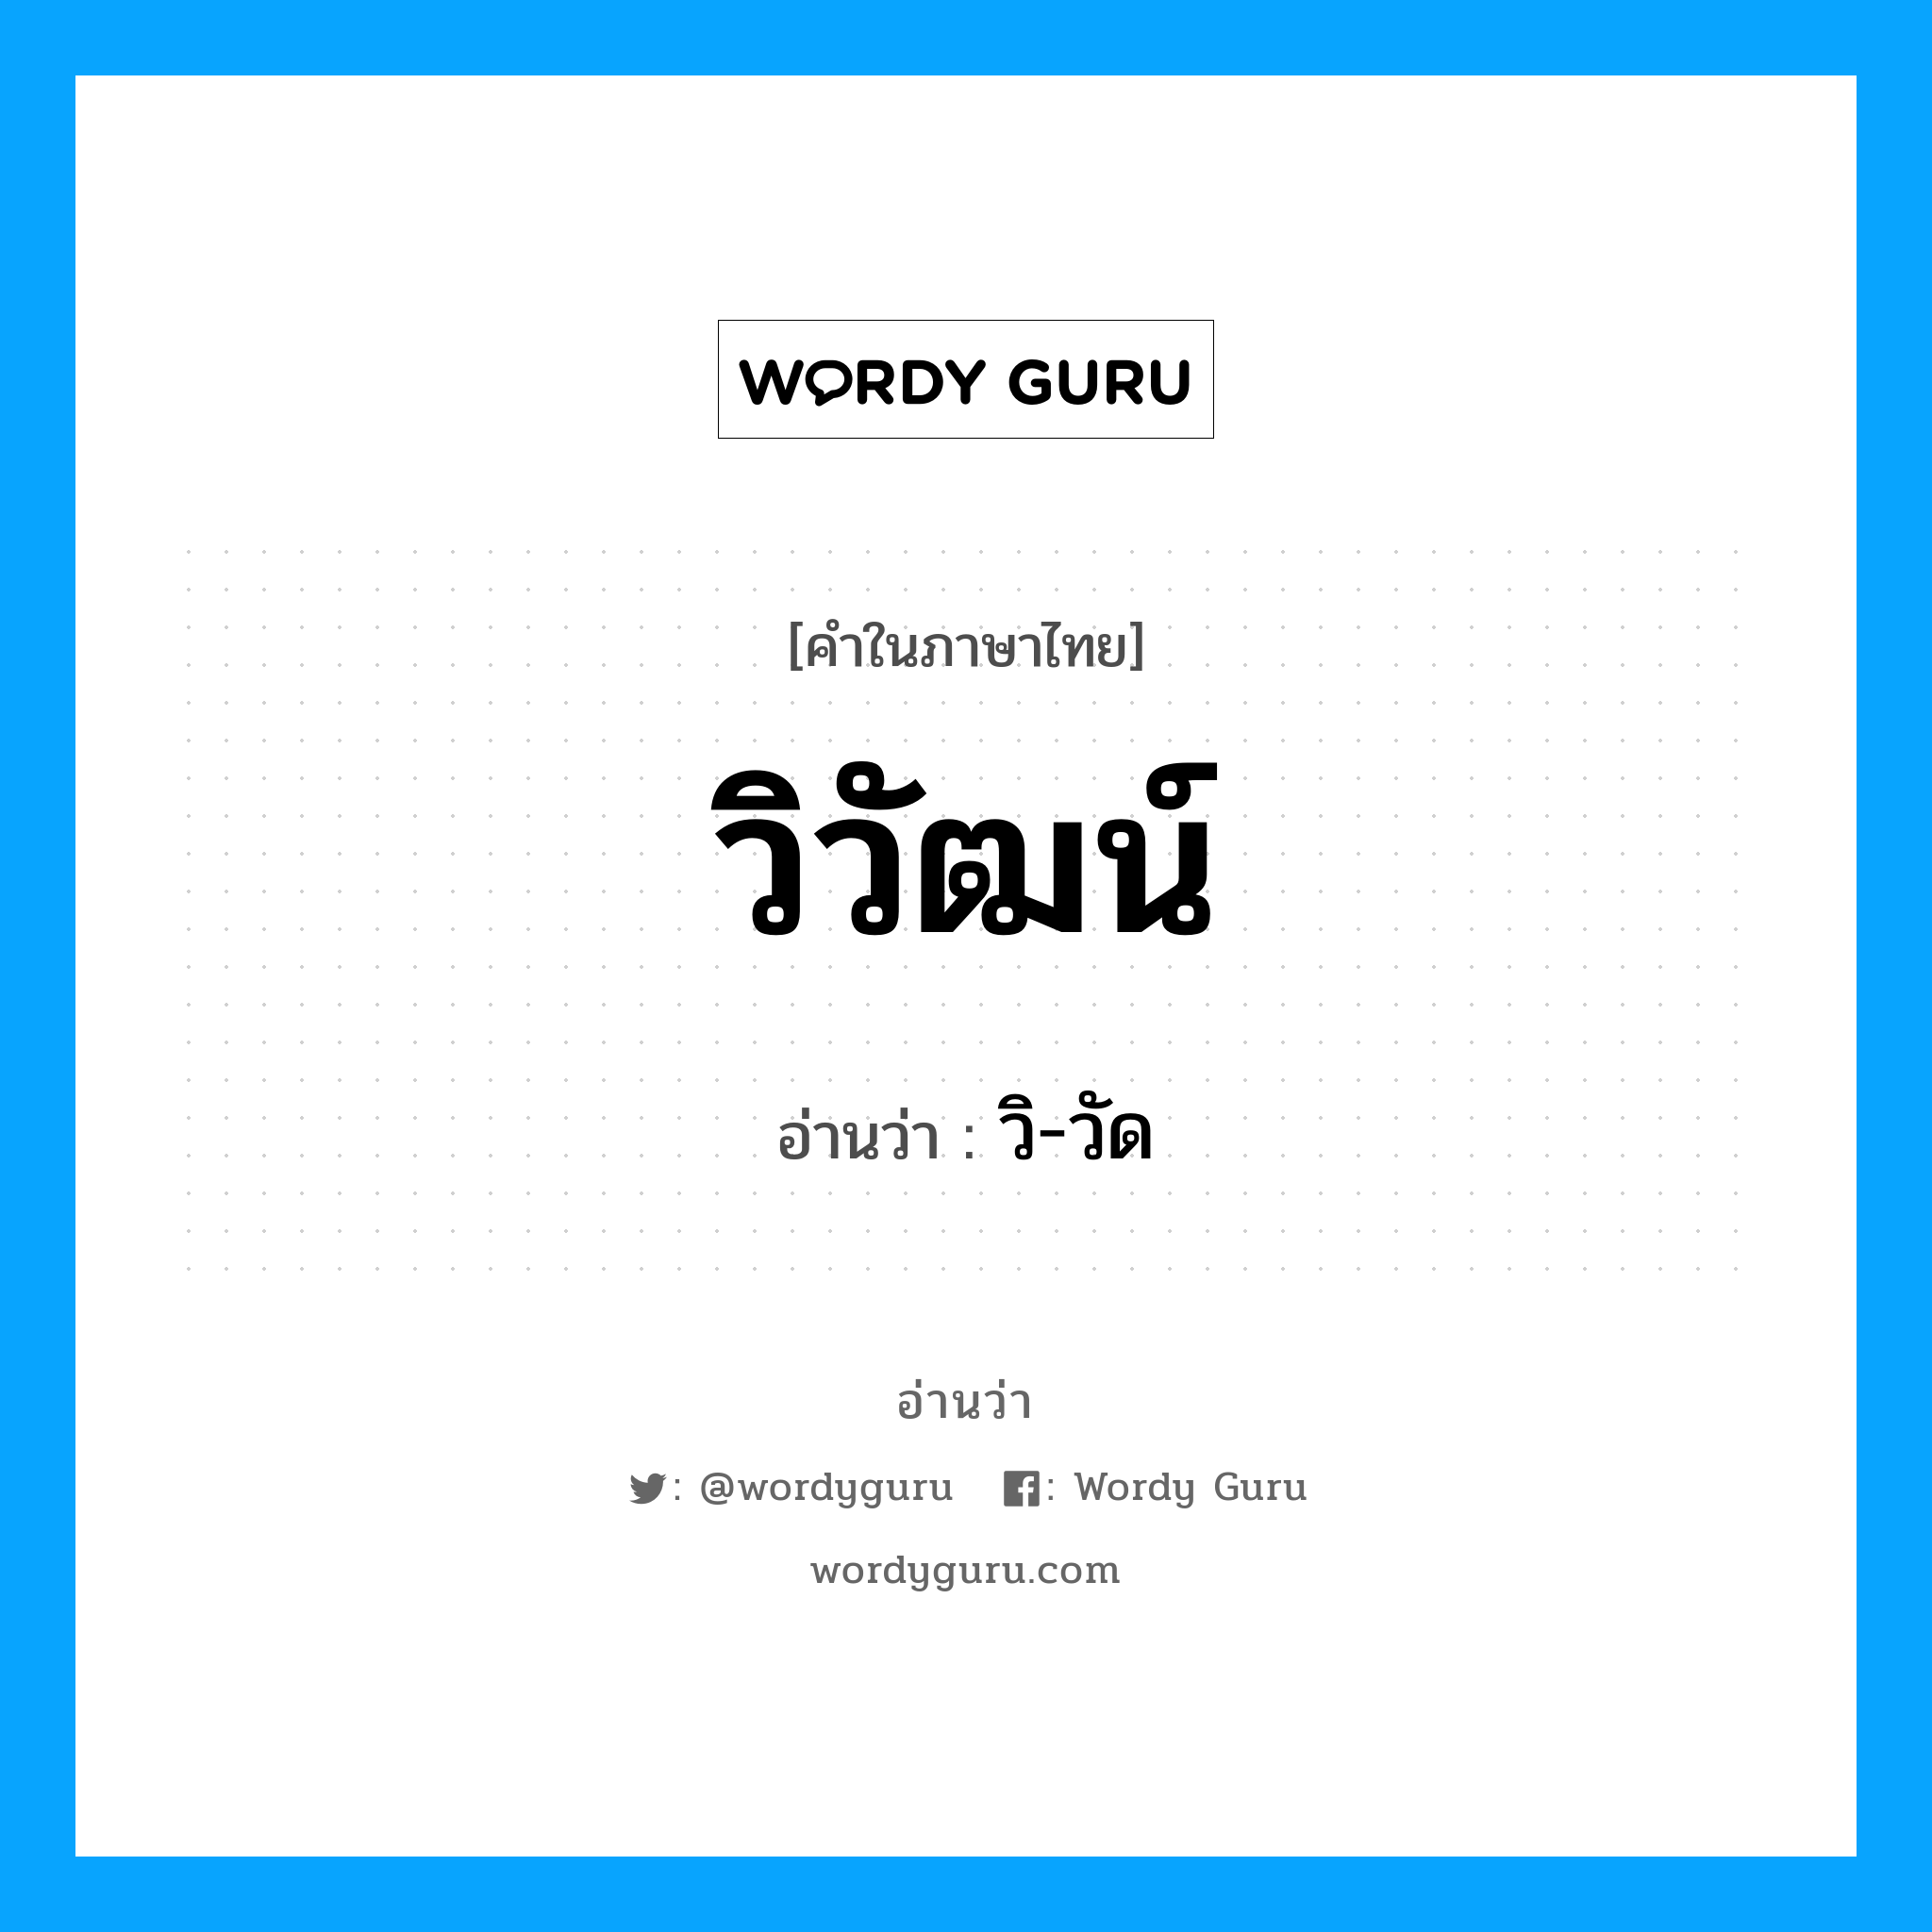 วิ-วัด เป็นคำอ่านของคำไหน?, คำในภาษาไทย วิ-วัด อ่านว่า วิวัฒน์